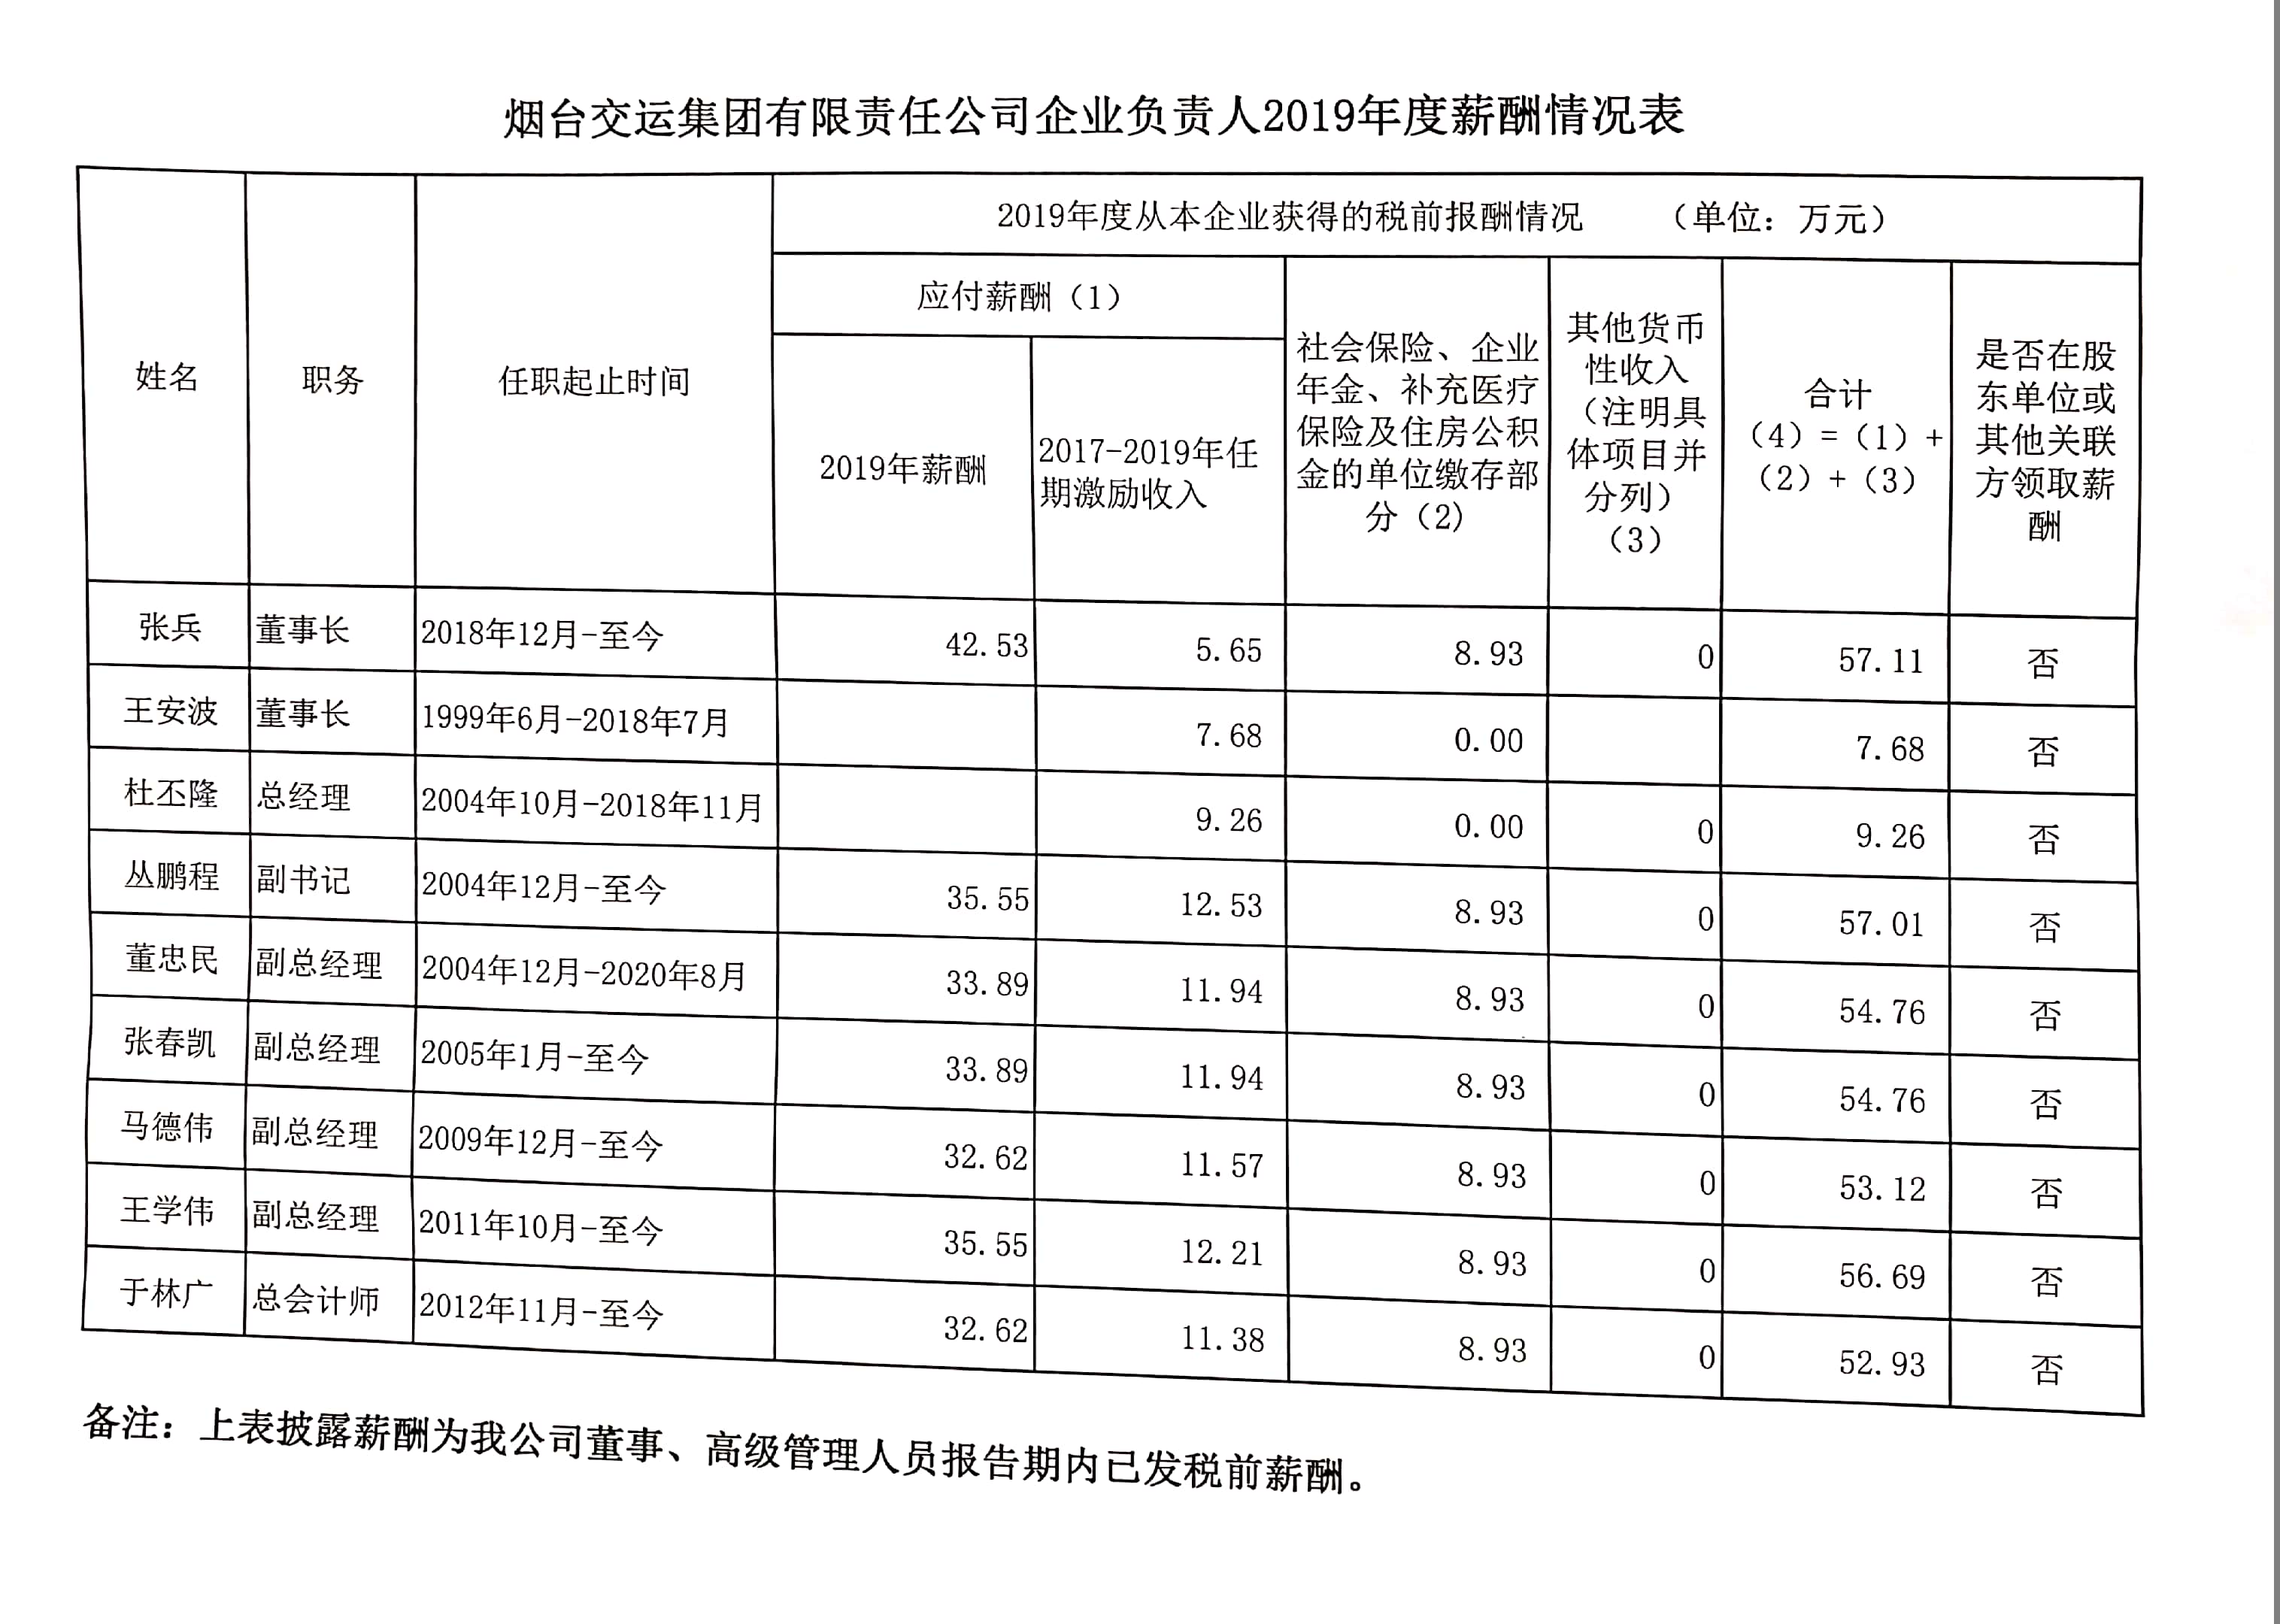 烟台交运集团有限责任公司企业负责人2019年度薪酬情况表